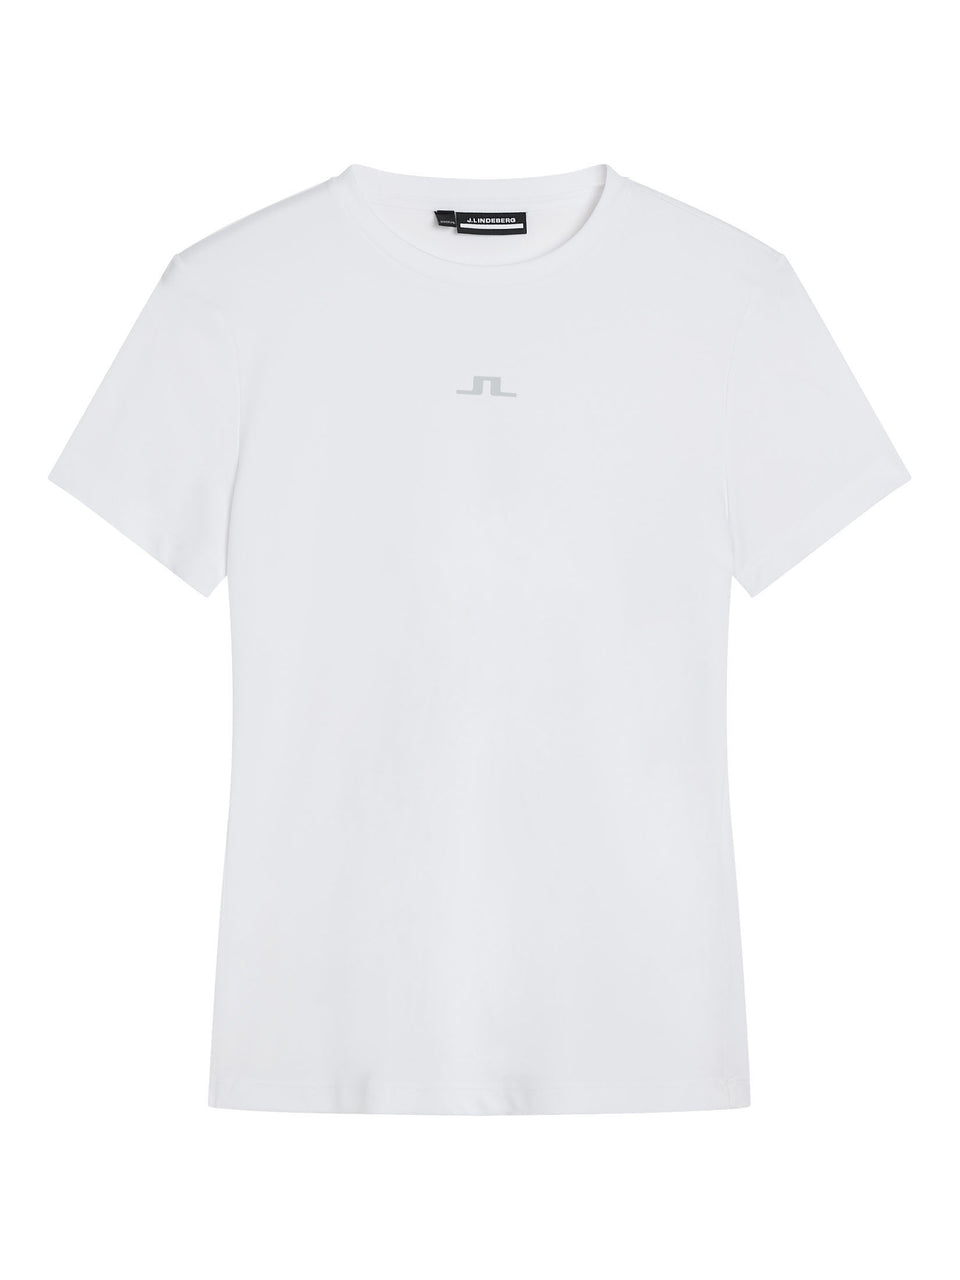 Ada T-shirt / White